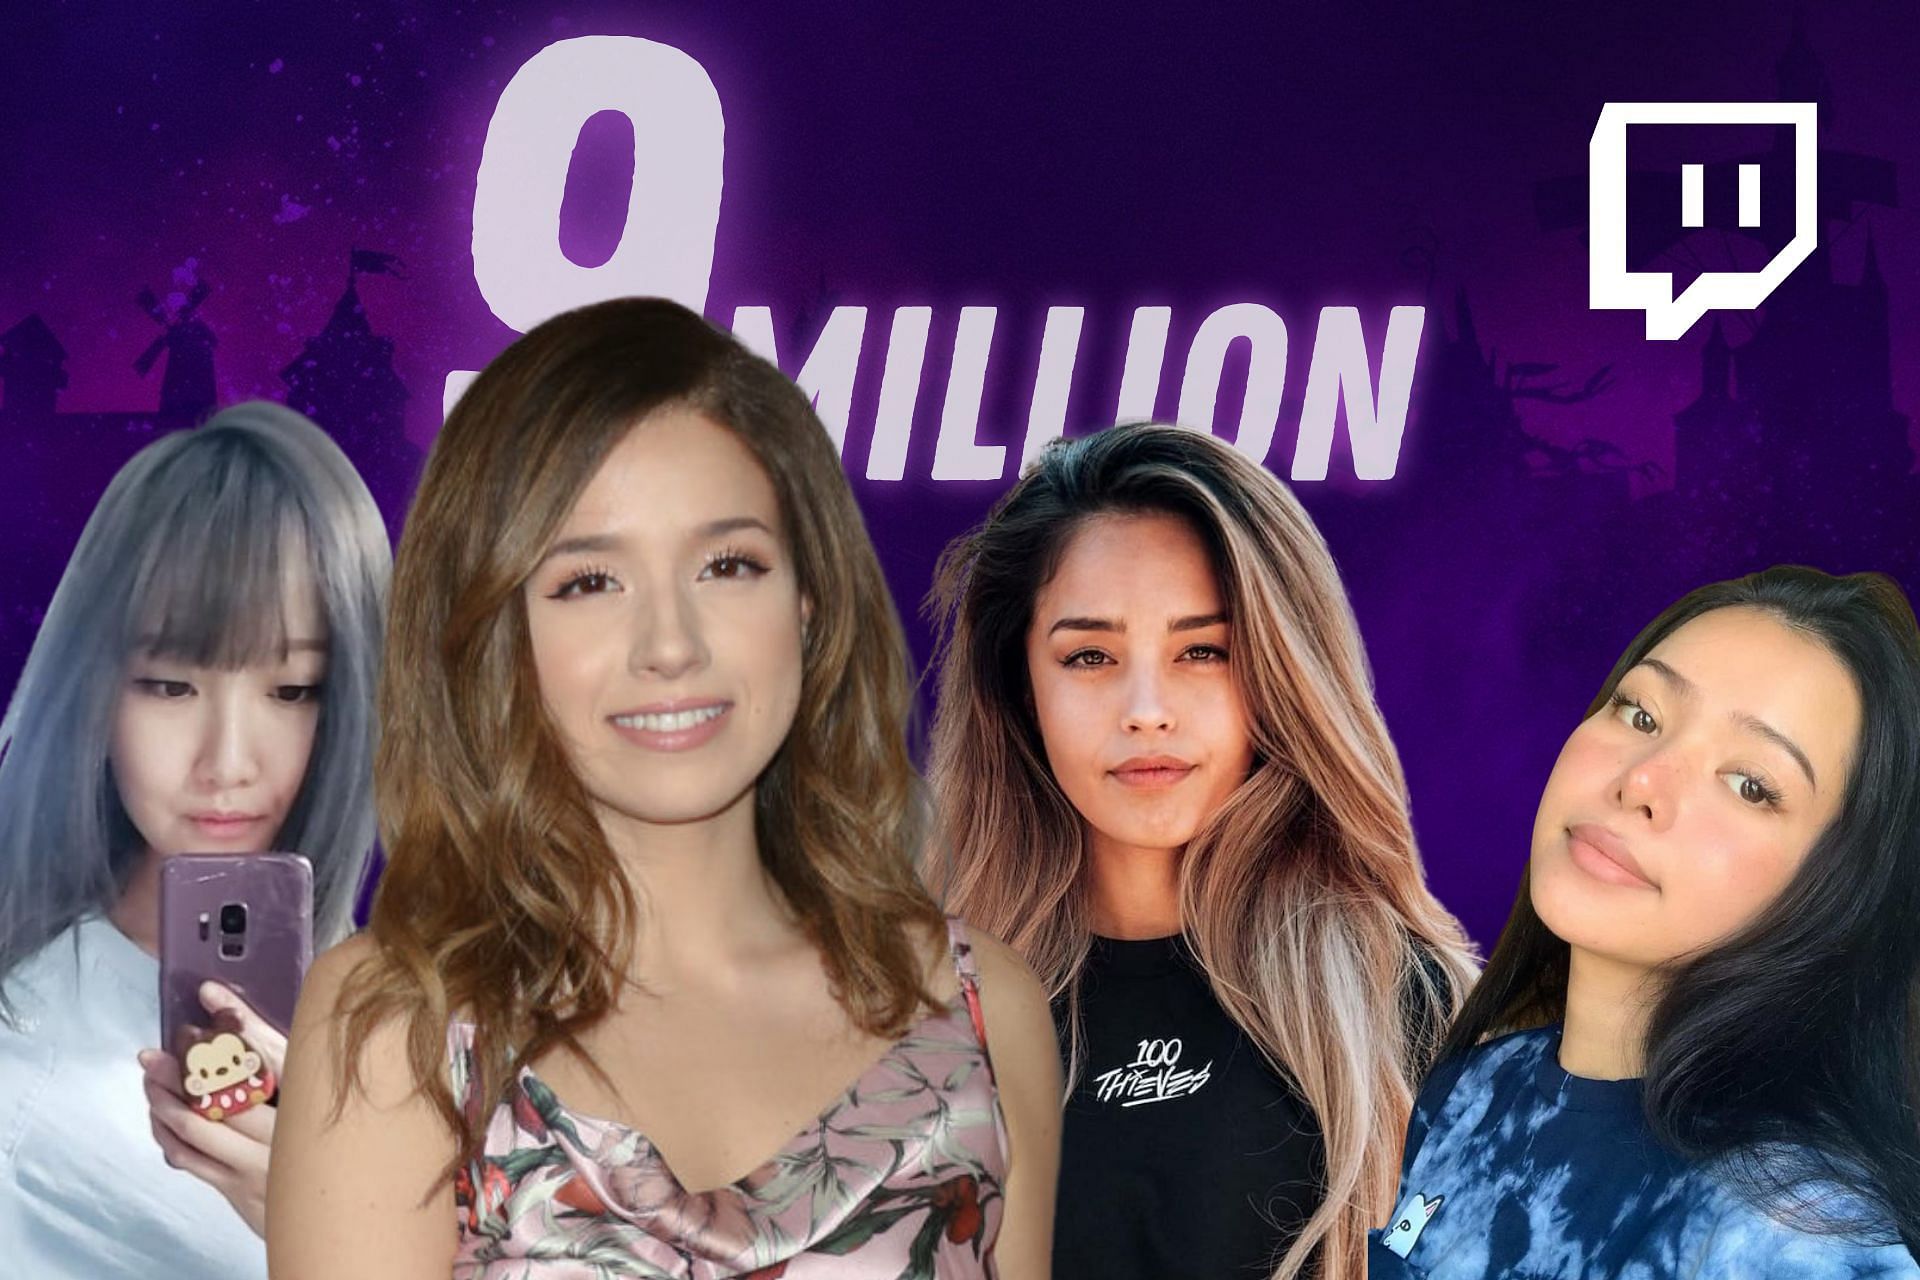 Valkyrae, AriaSaki, Bella Poarch and others react as Pokimane reached 9 million on Twitch (Image via- Sportskeeda)